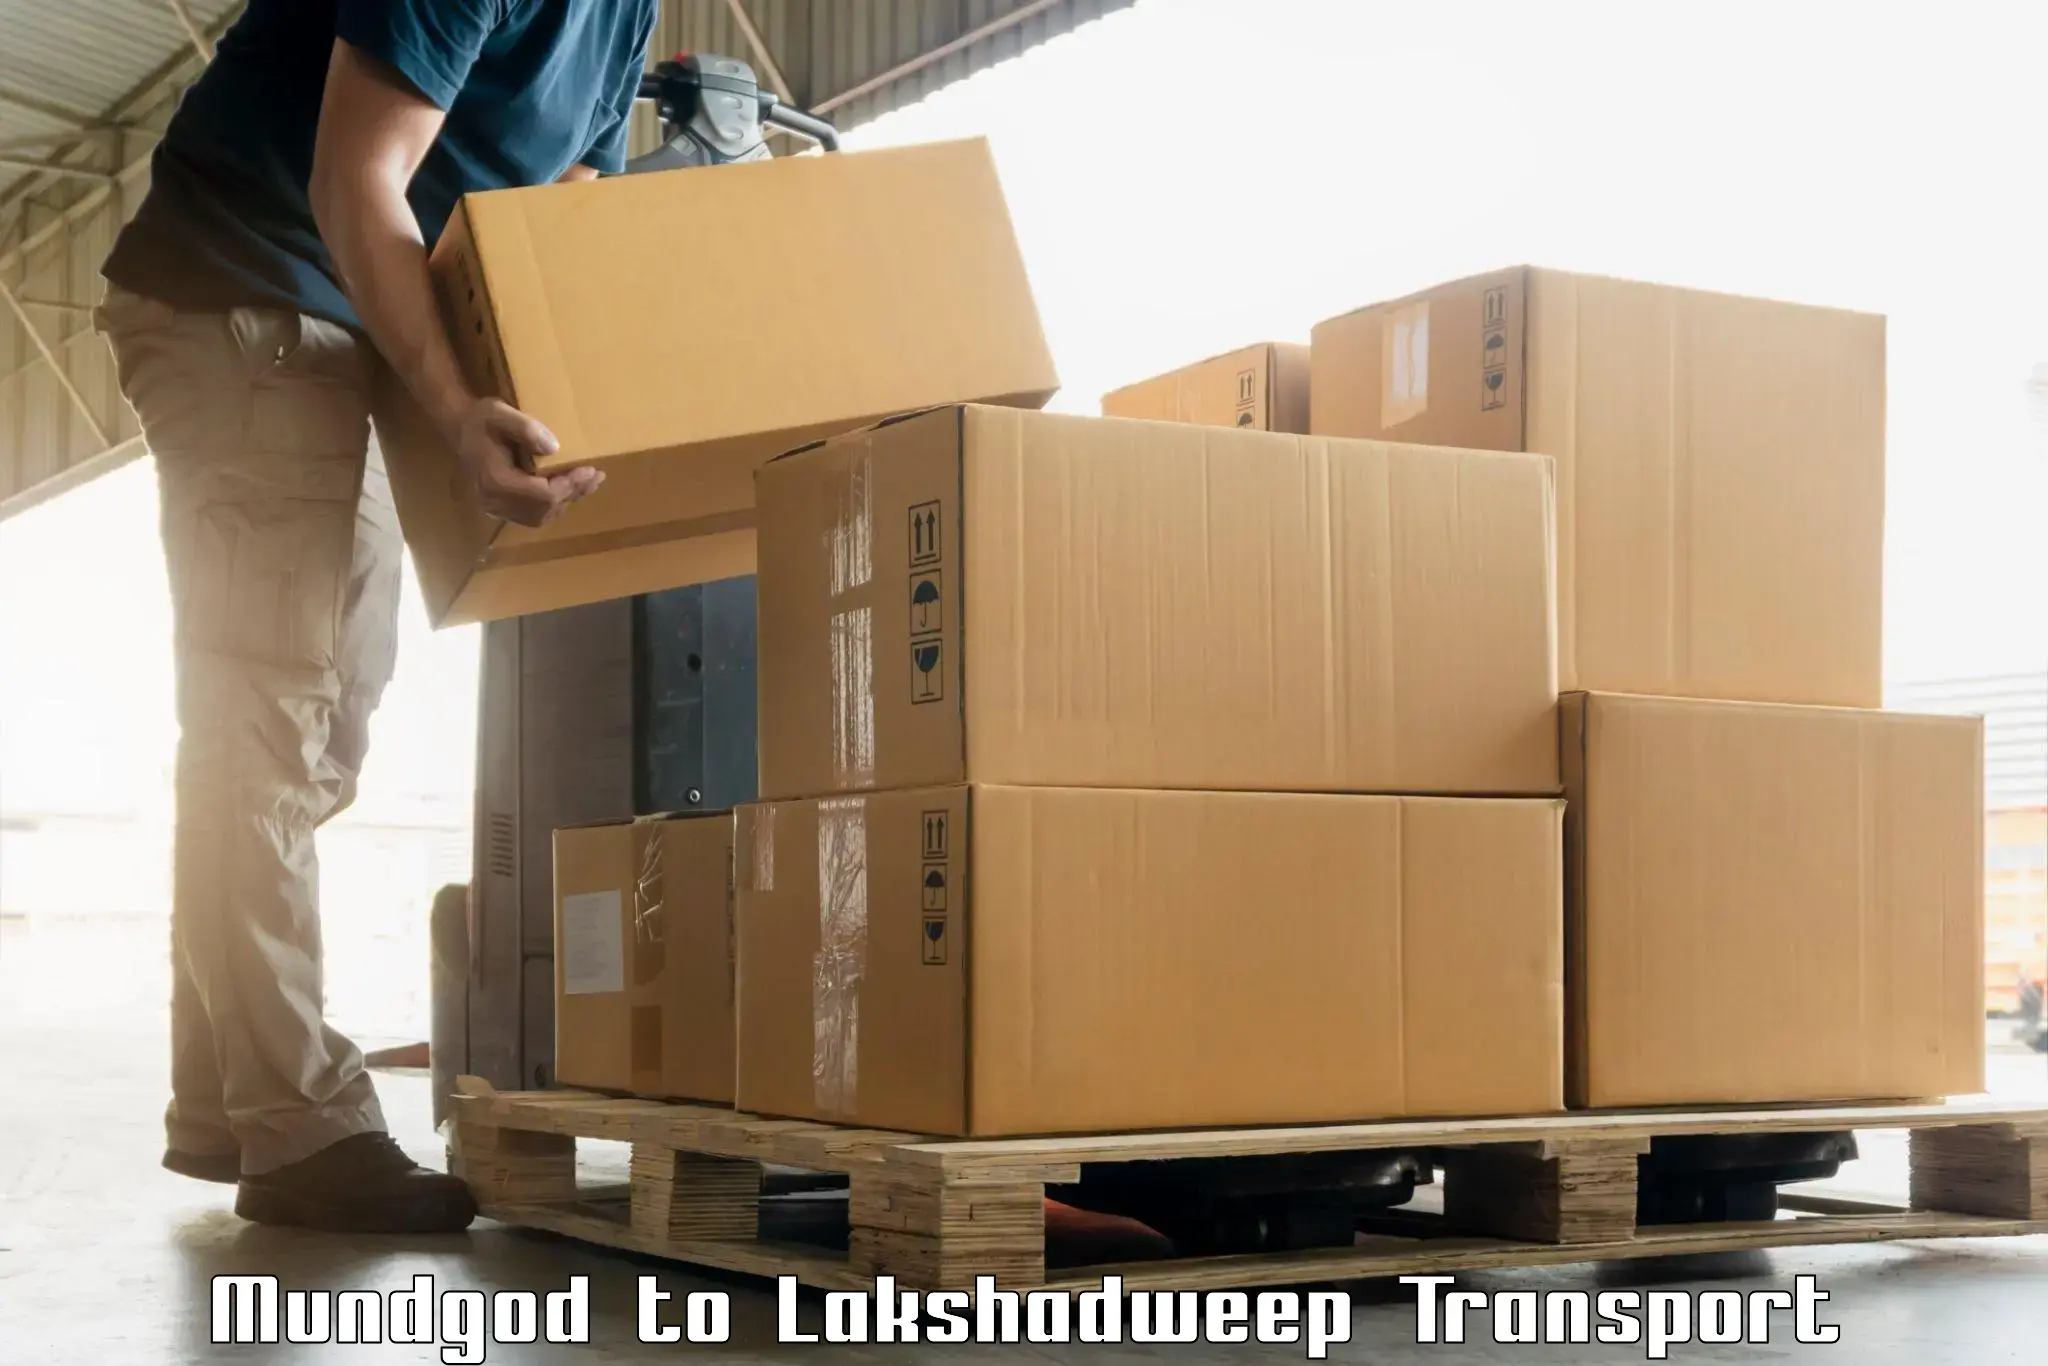 Bike shipping service Mundgod to Lakshadweep